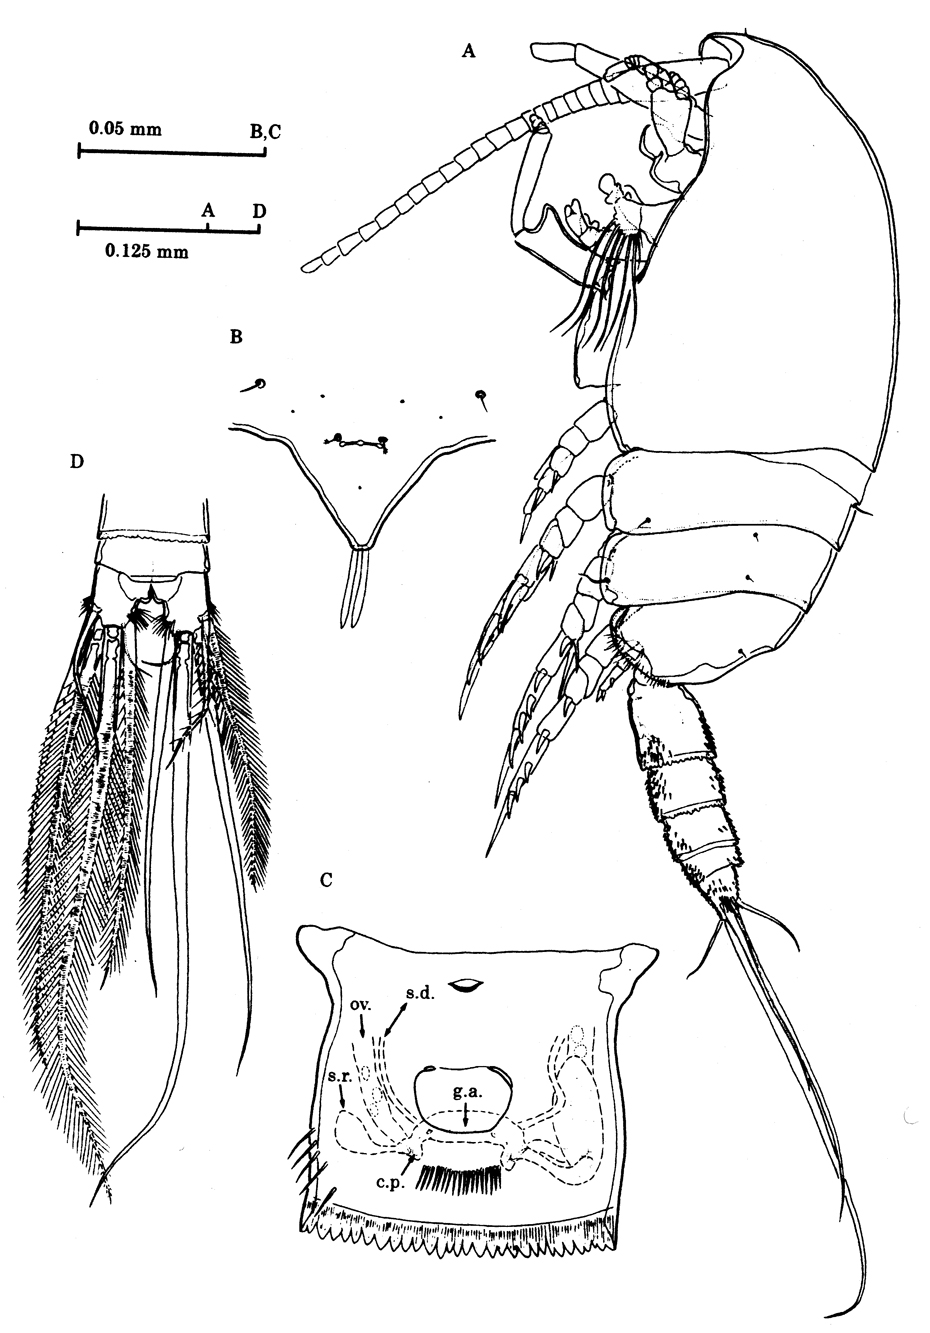 Espèce Stygocyclopia australis - Planche 1 de figures morphologiques